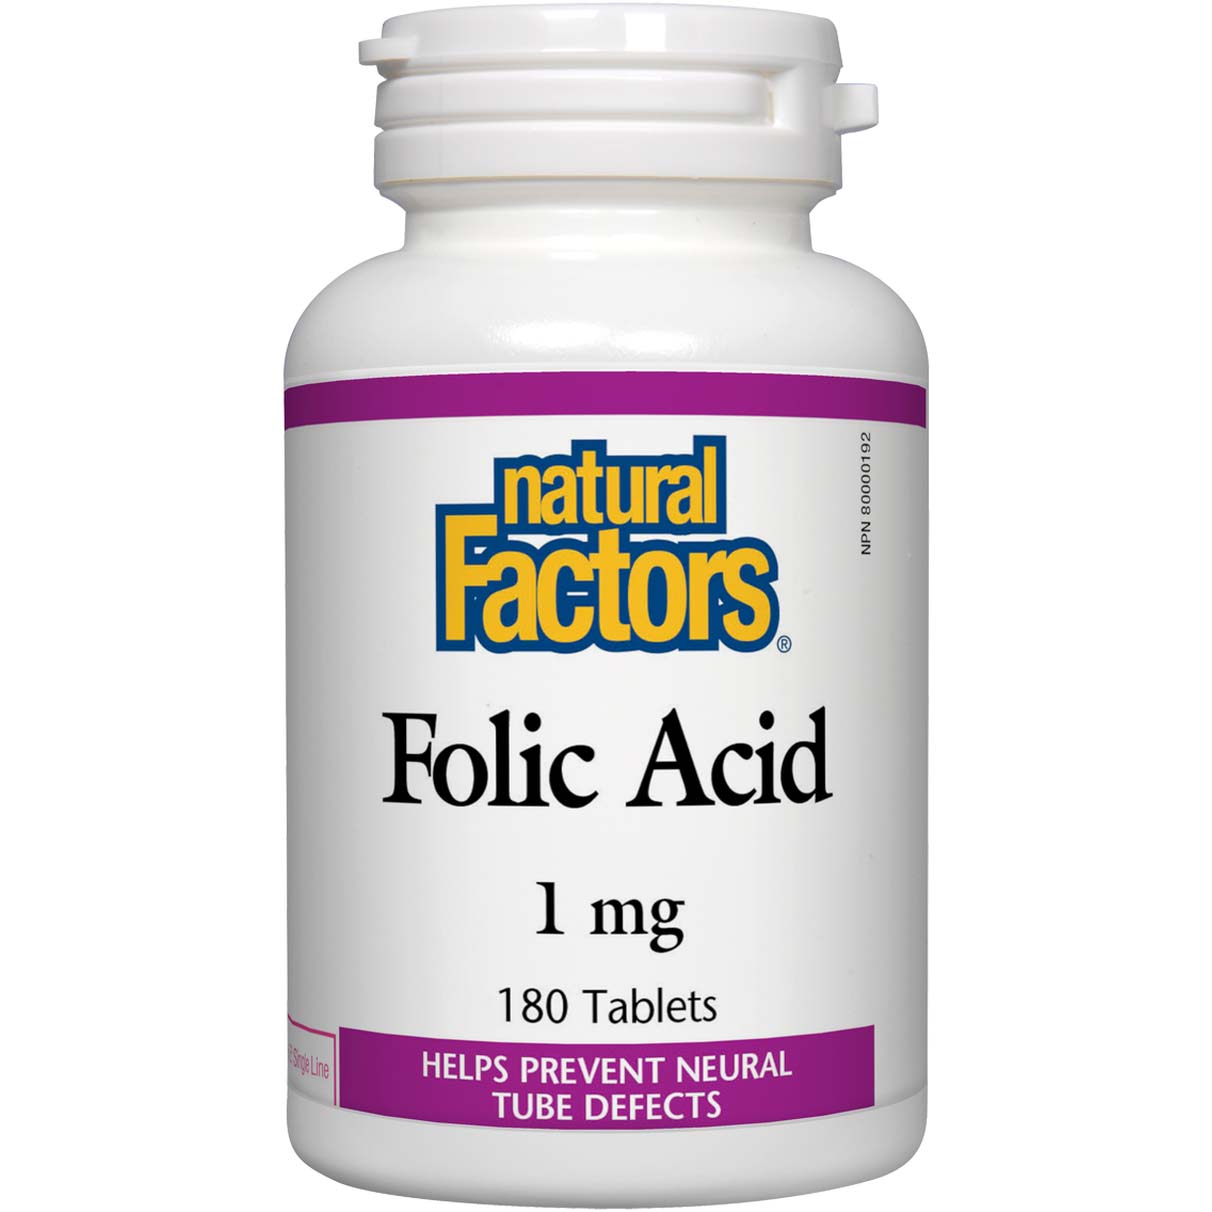 Natural Factors Folic Acid 180 Tablets 1 mg